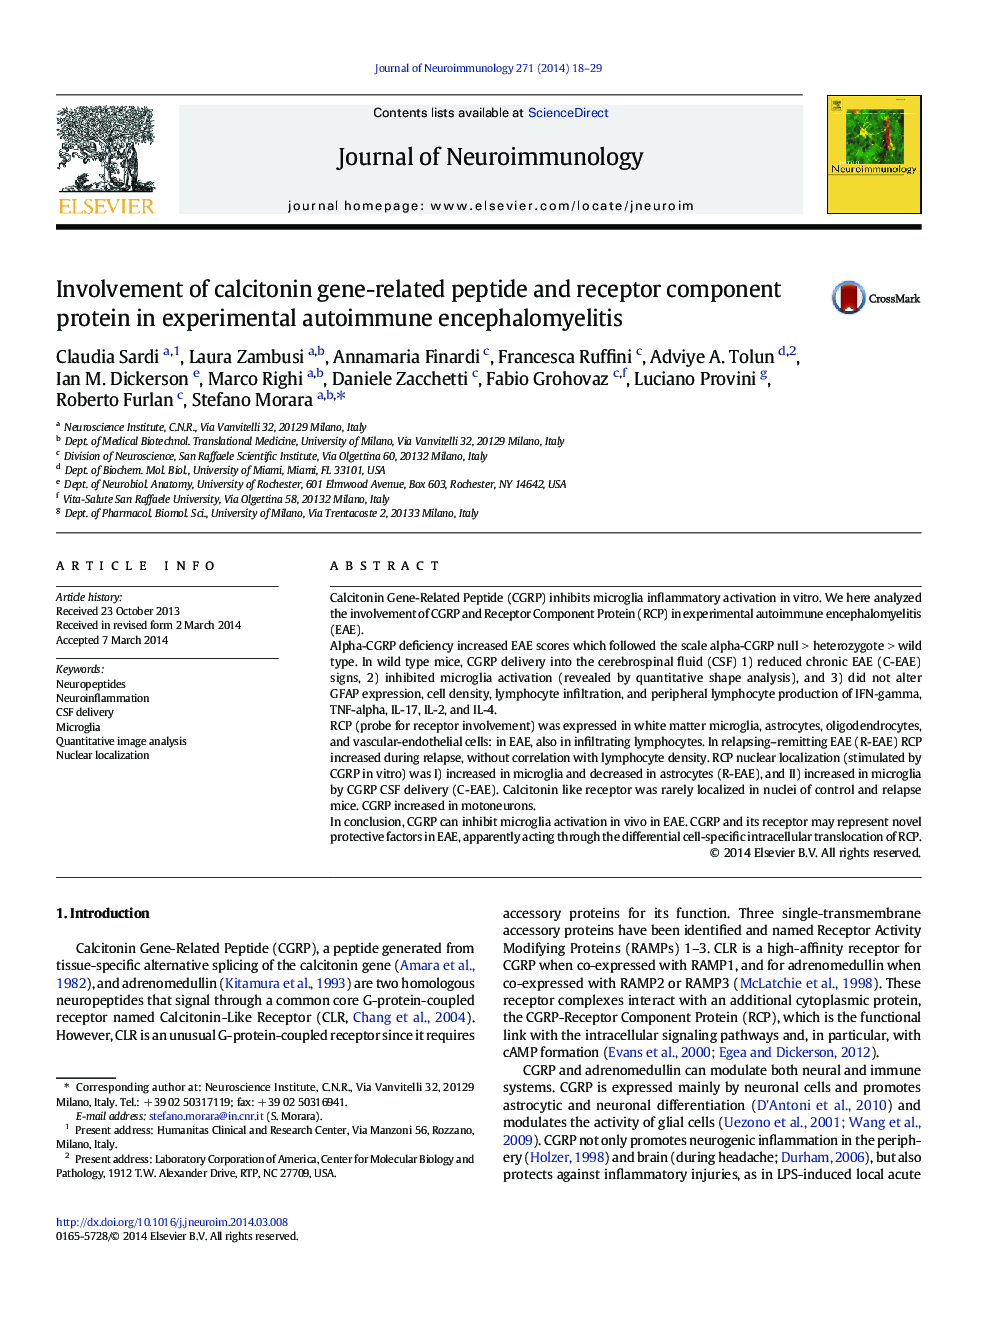 دخالت پپتید مرتبط با ژن کلسیتونین و پروتئین مولکولی گیرنده در آنسفالومیلیت های اتوایمیون تجربی 